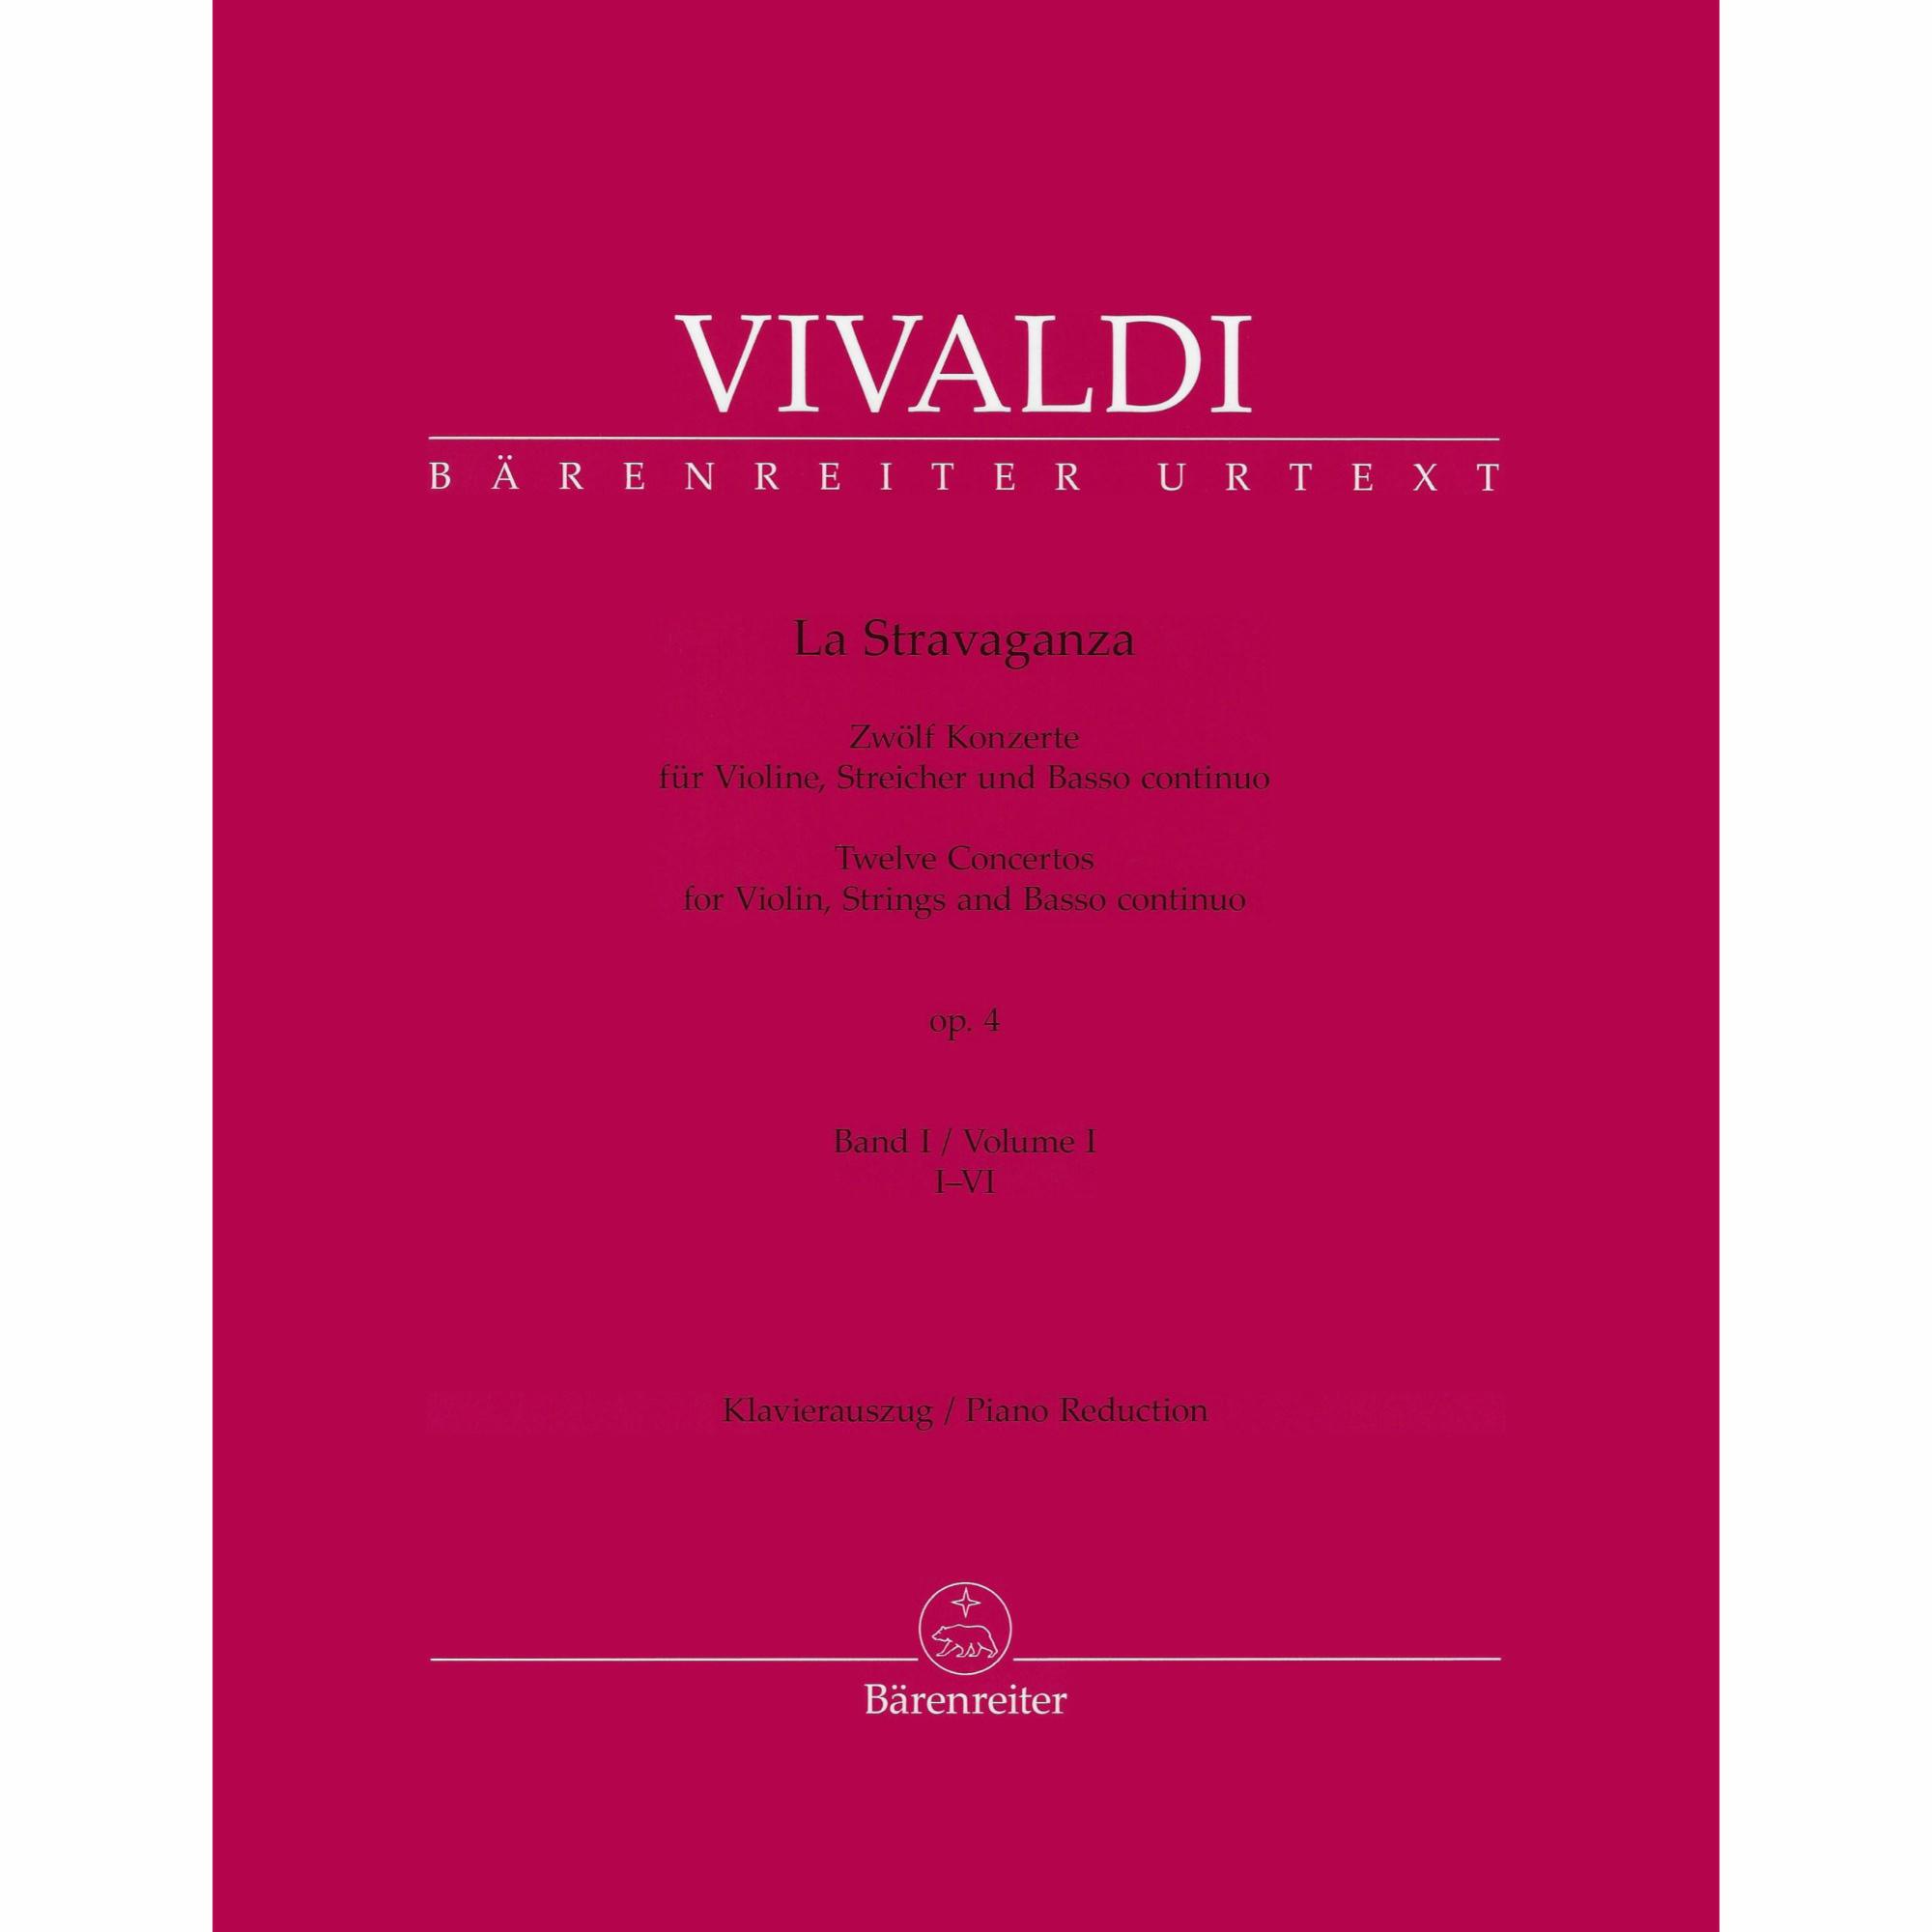 Vivaldi -- La Stravaganza, Op. 4 for Violin and Piano